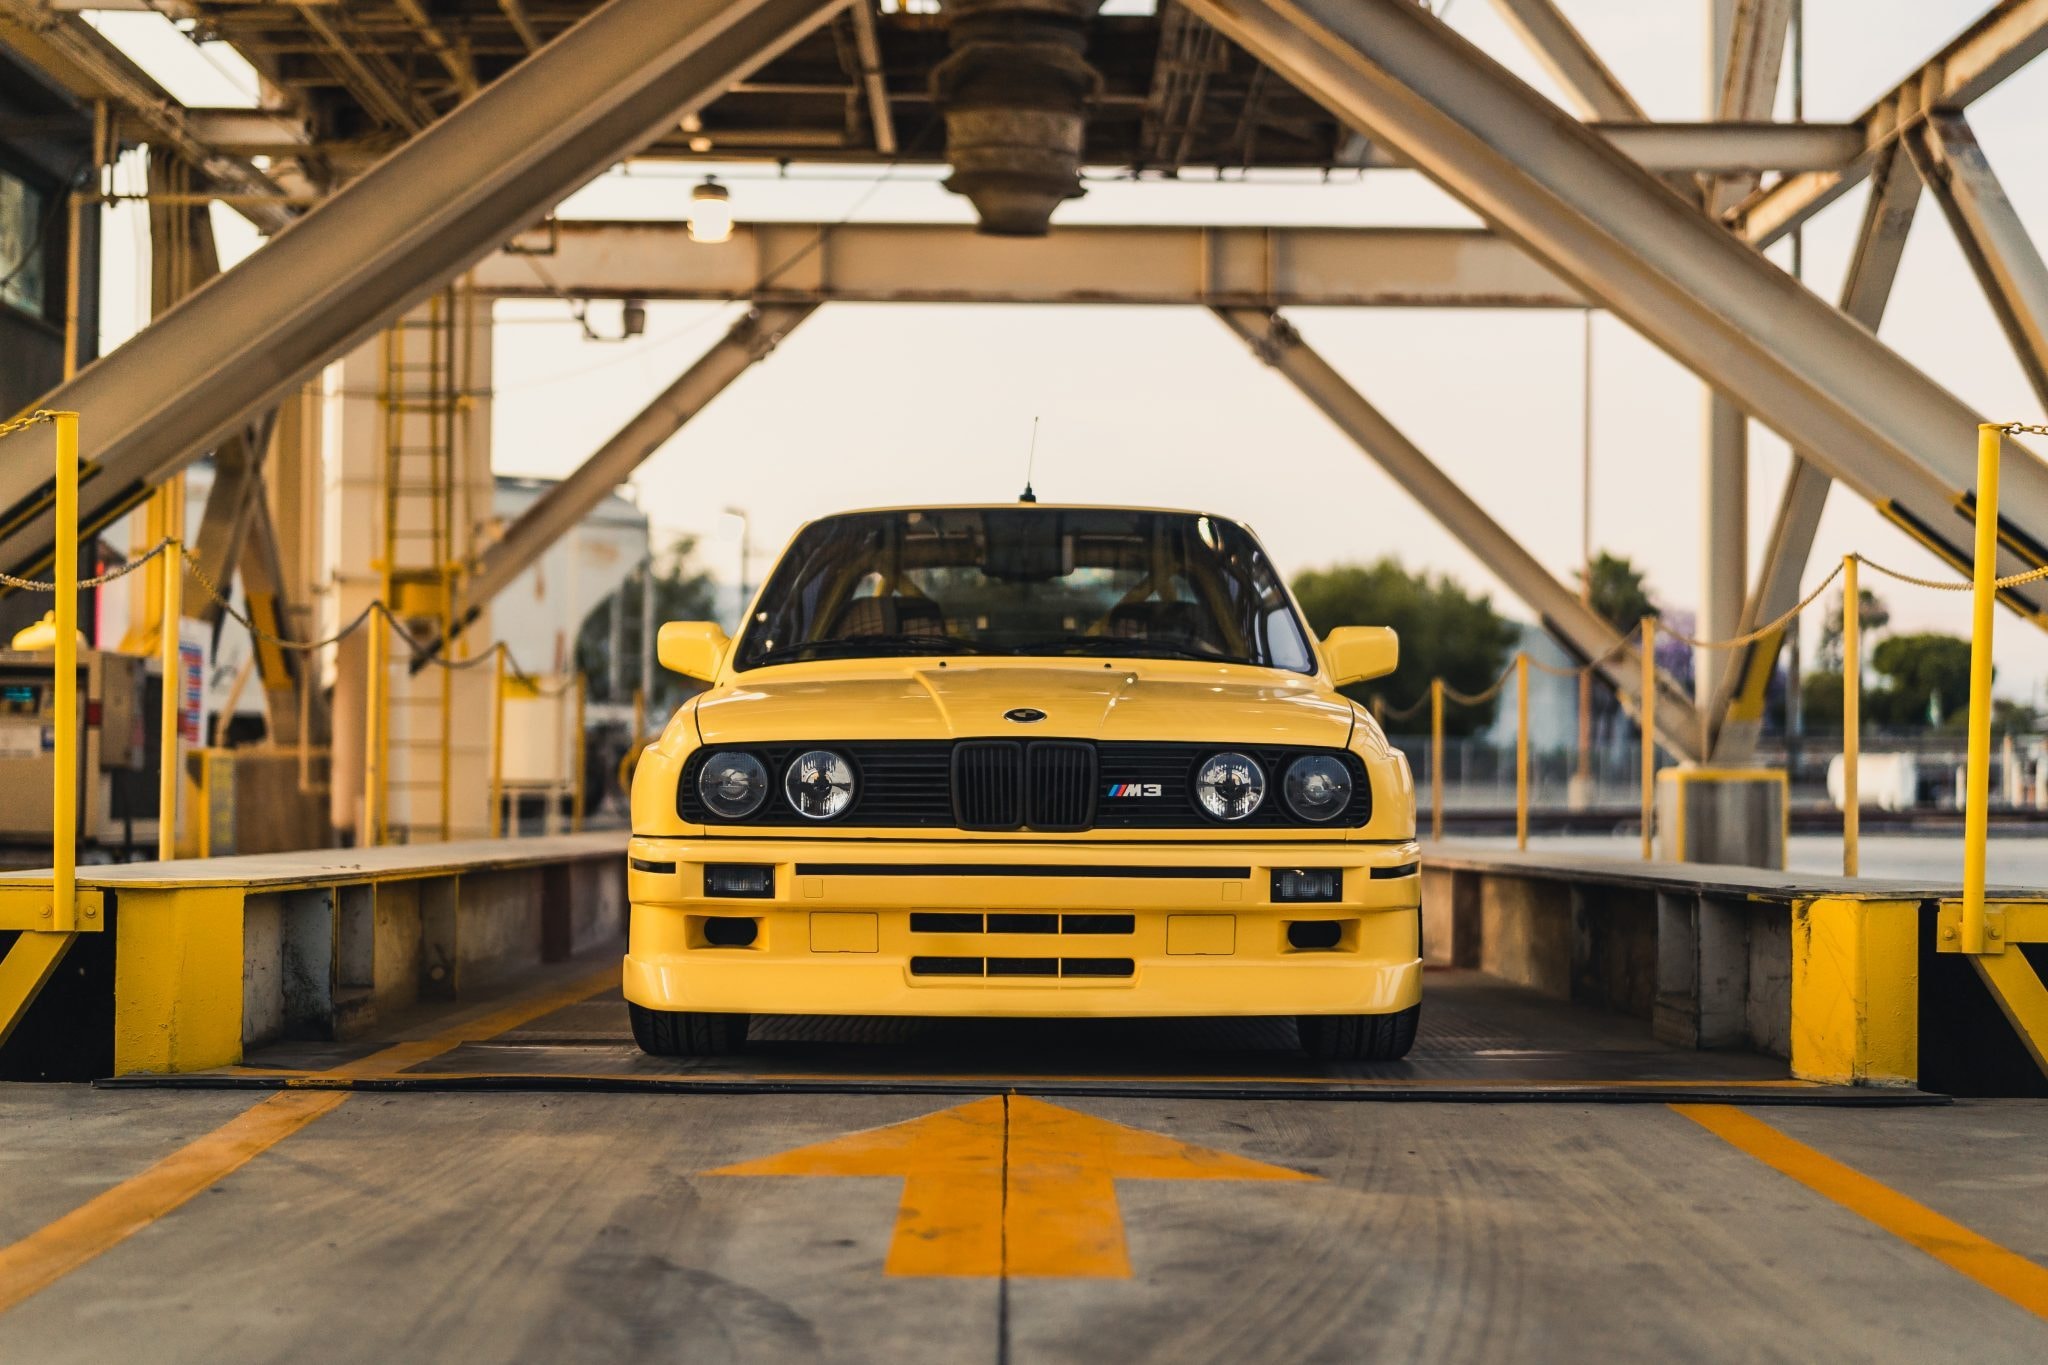 1989 年式樣 BMW E30 M3 改裝車款正式展開拍賣